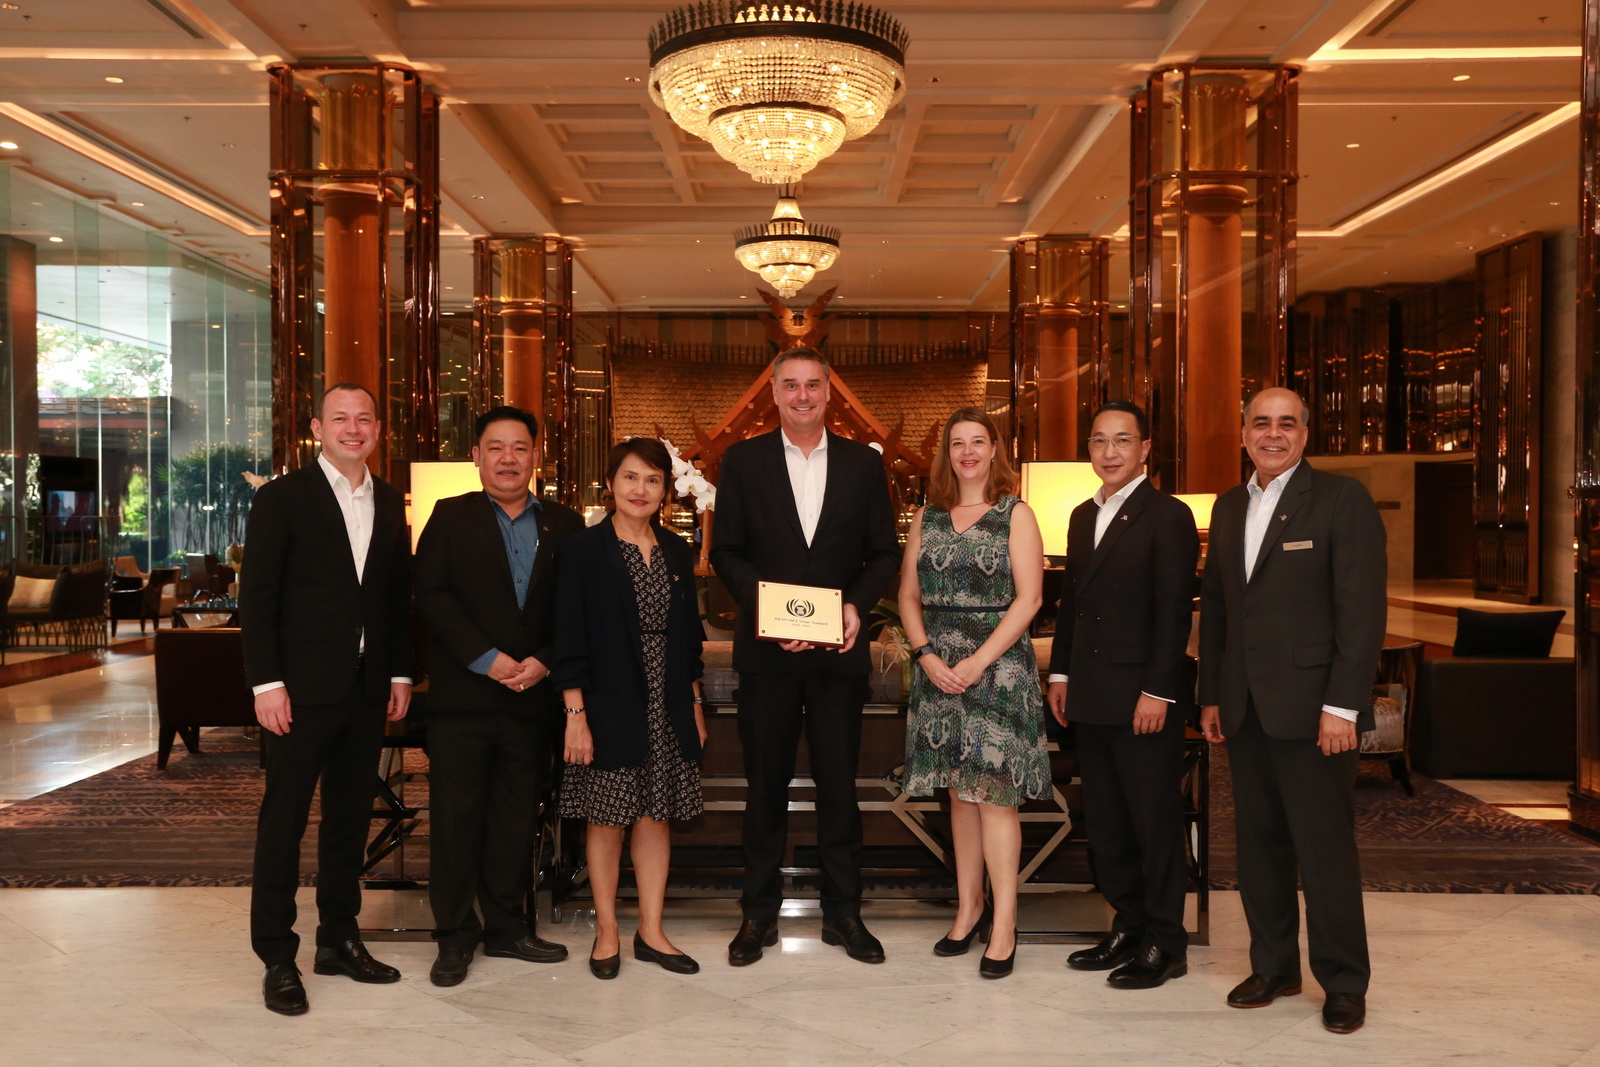 โรงแรมแบงค็อก แมริออท มาร์คีส์ ควีนส์ปาร์ค รั้งอันดับ 1 ในธุรกิจ MICE คว้ารางวัลใหญ่จาก ASEAN Tourism Awards